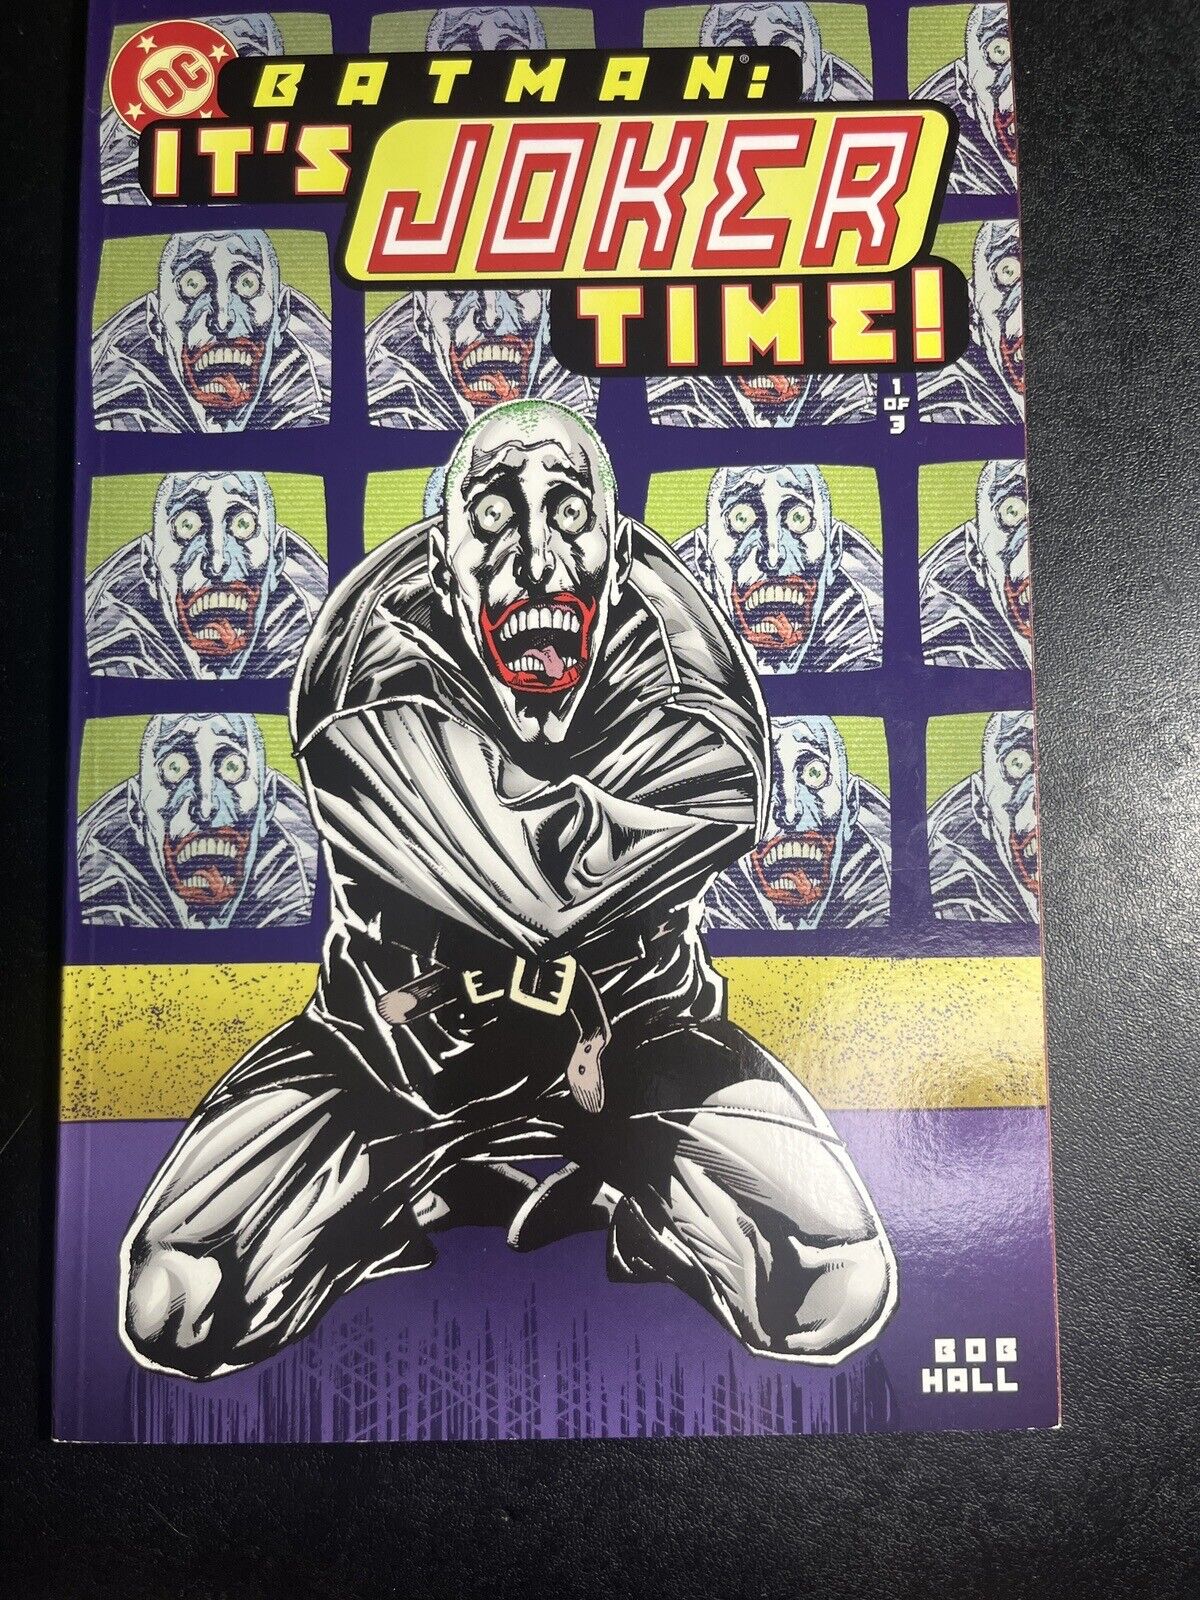 Batman: It's Joker Time #1 2000 DC Comics Bob Hall Prestige Format